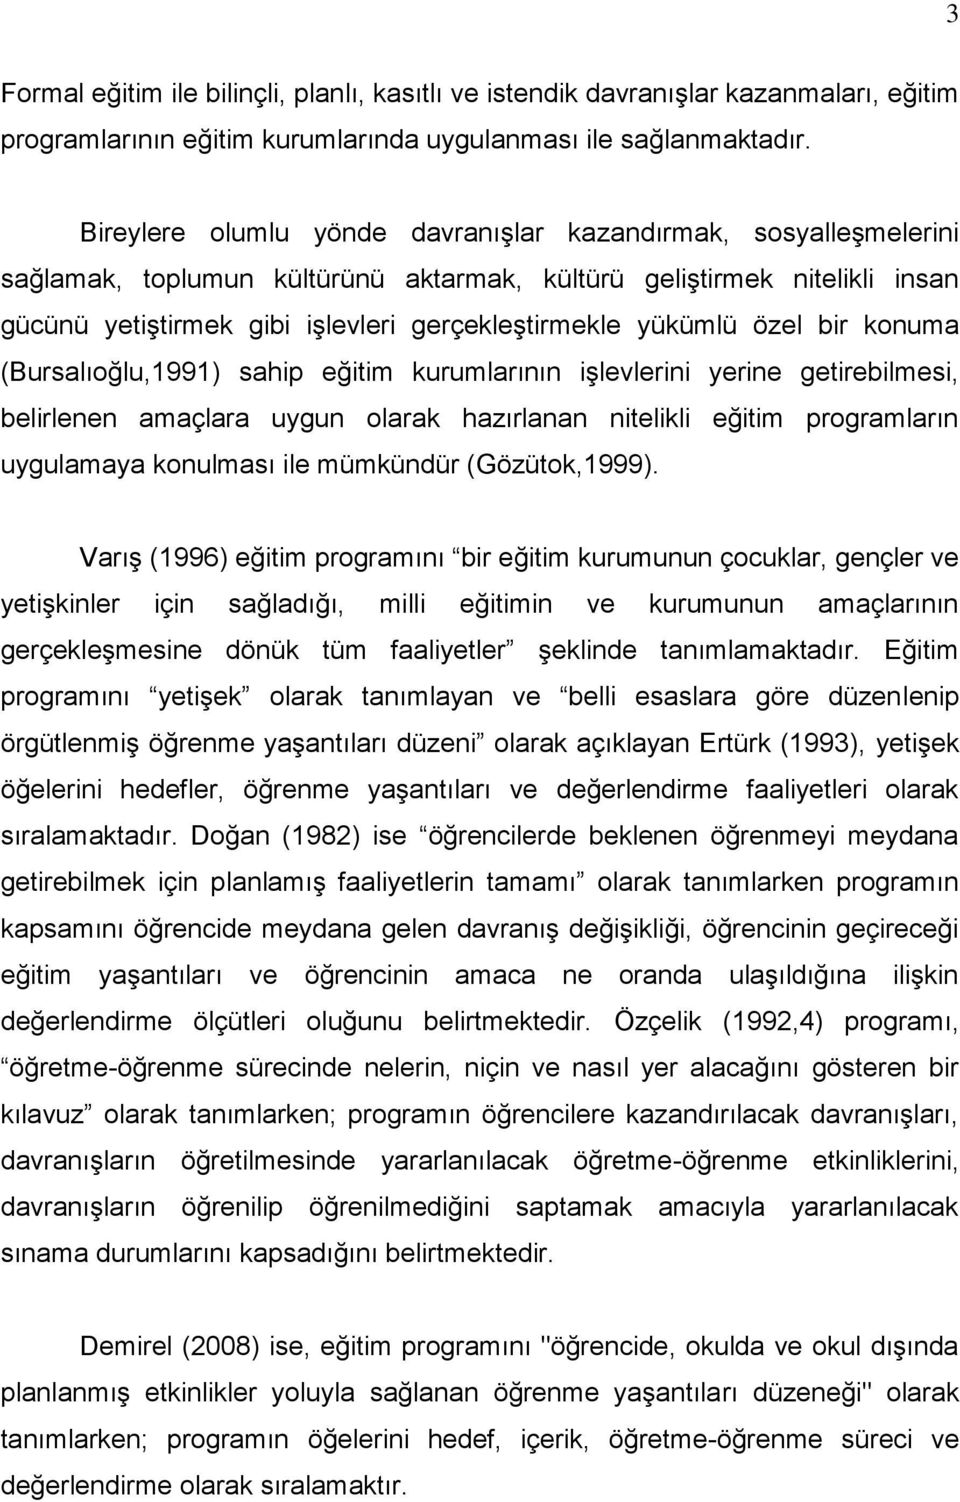 yükümlü özel bir konuma (Bursalıoğlu,1991) sahip eğitim kurumlarının işlevlerini yerine getirebilmesi, belirlenen amaçlara uygun olarak hazırlanan nitelikli eğitim programların uygulamaya konulması